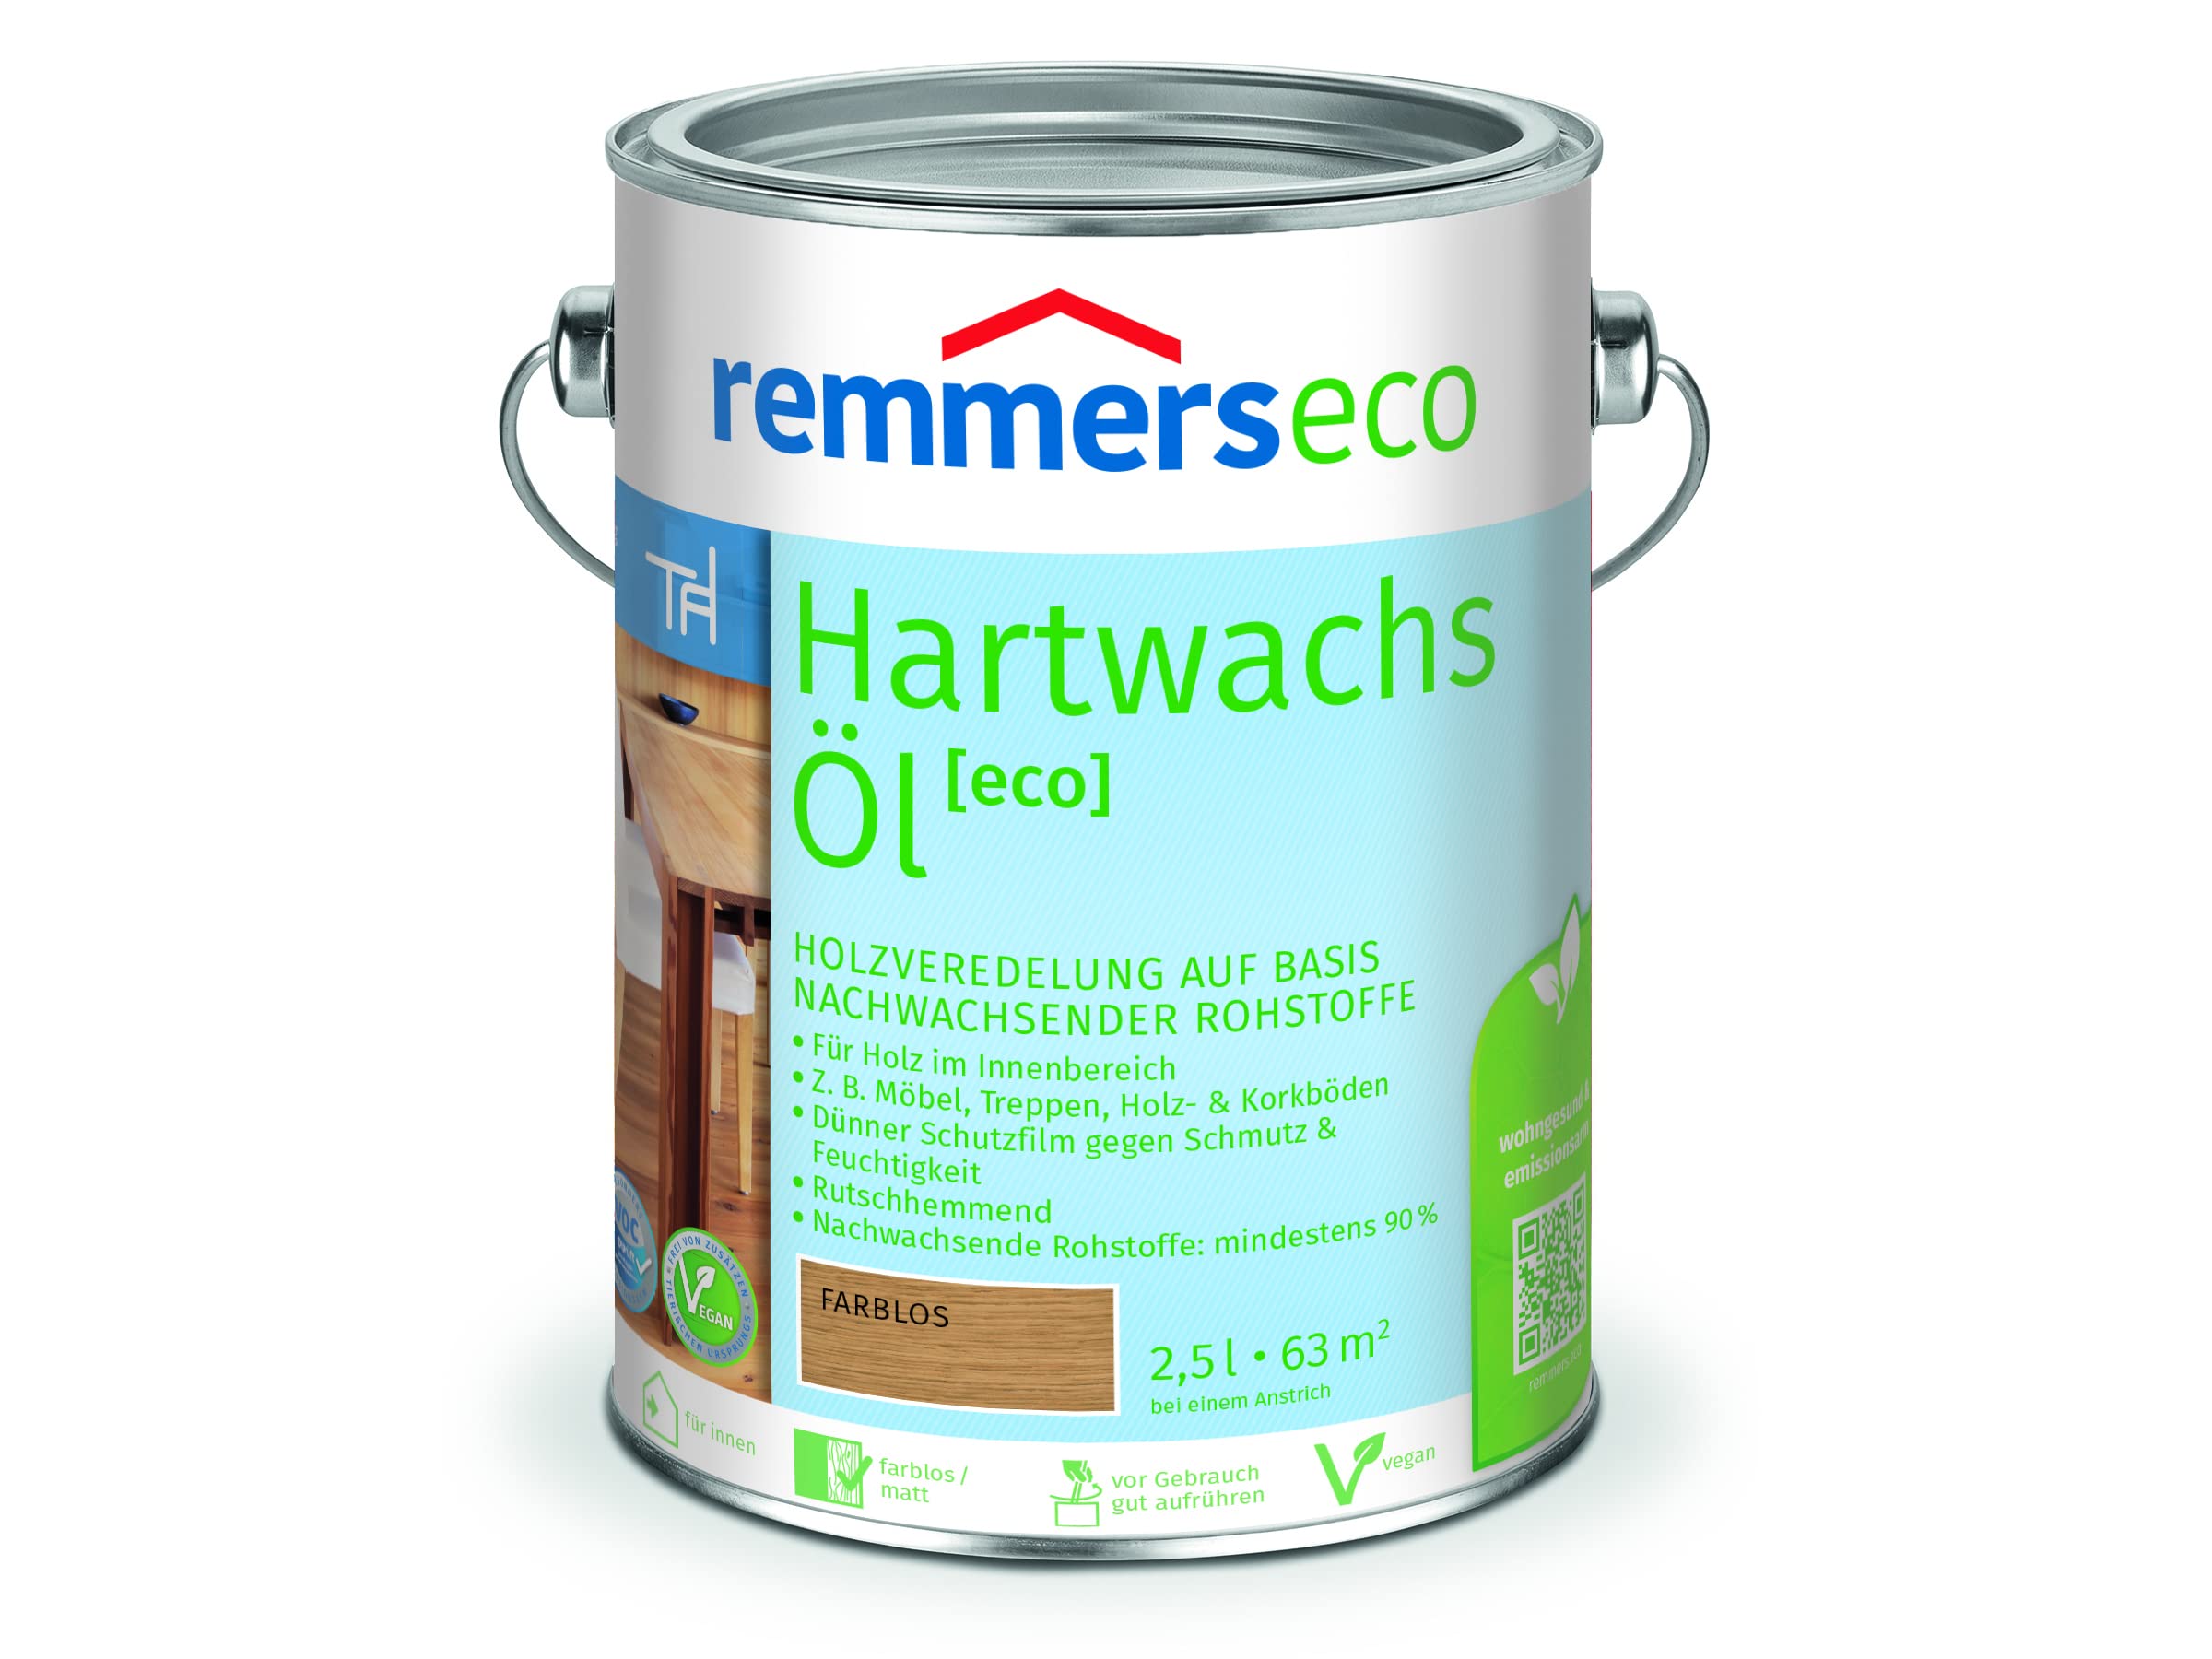 Remmers Hartwachs-Öl [eco] farblos, 2,5 Liter, Hartwachsöl für innen, natürliche Basis, Beize, Öl und Versiegelung in einem, nachhaltig, vegan